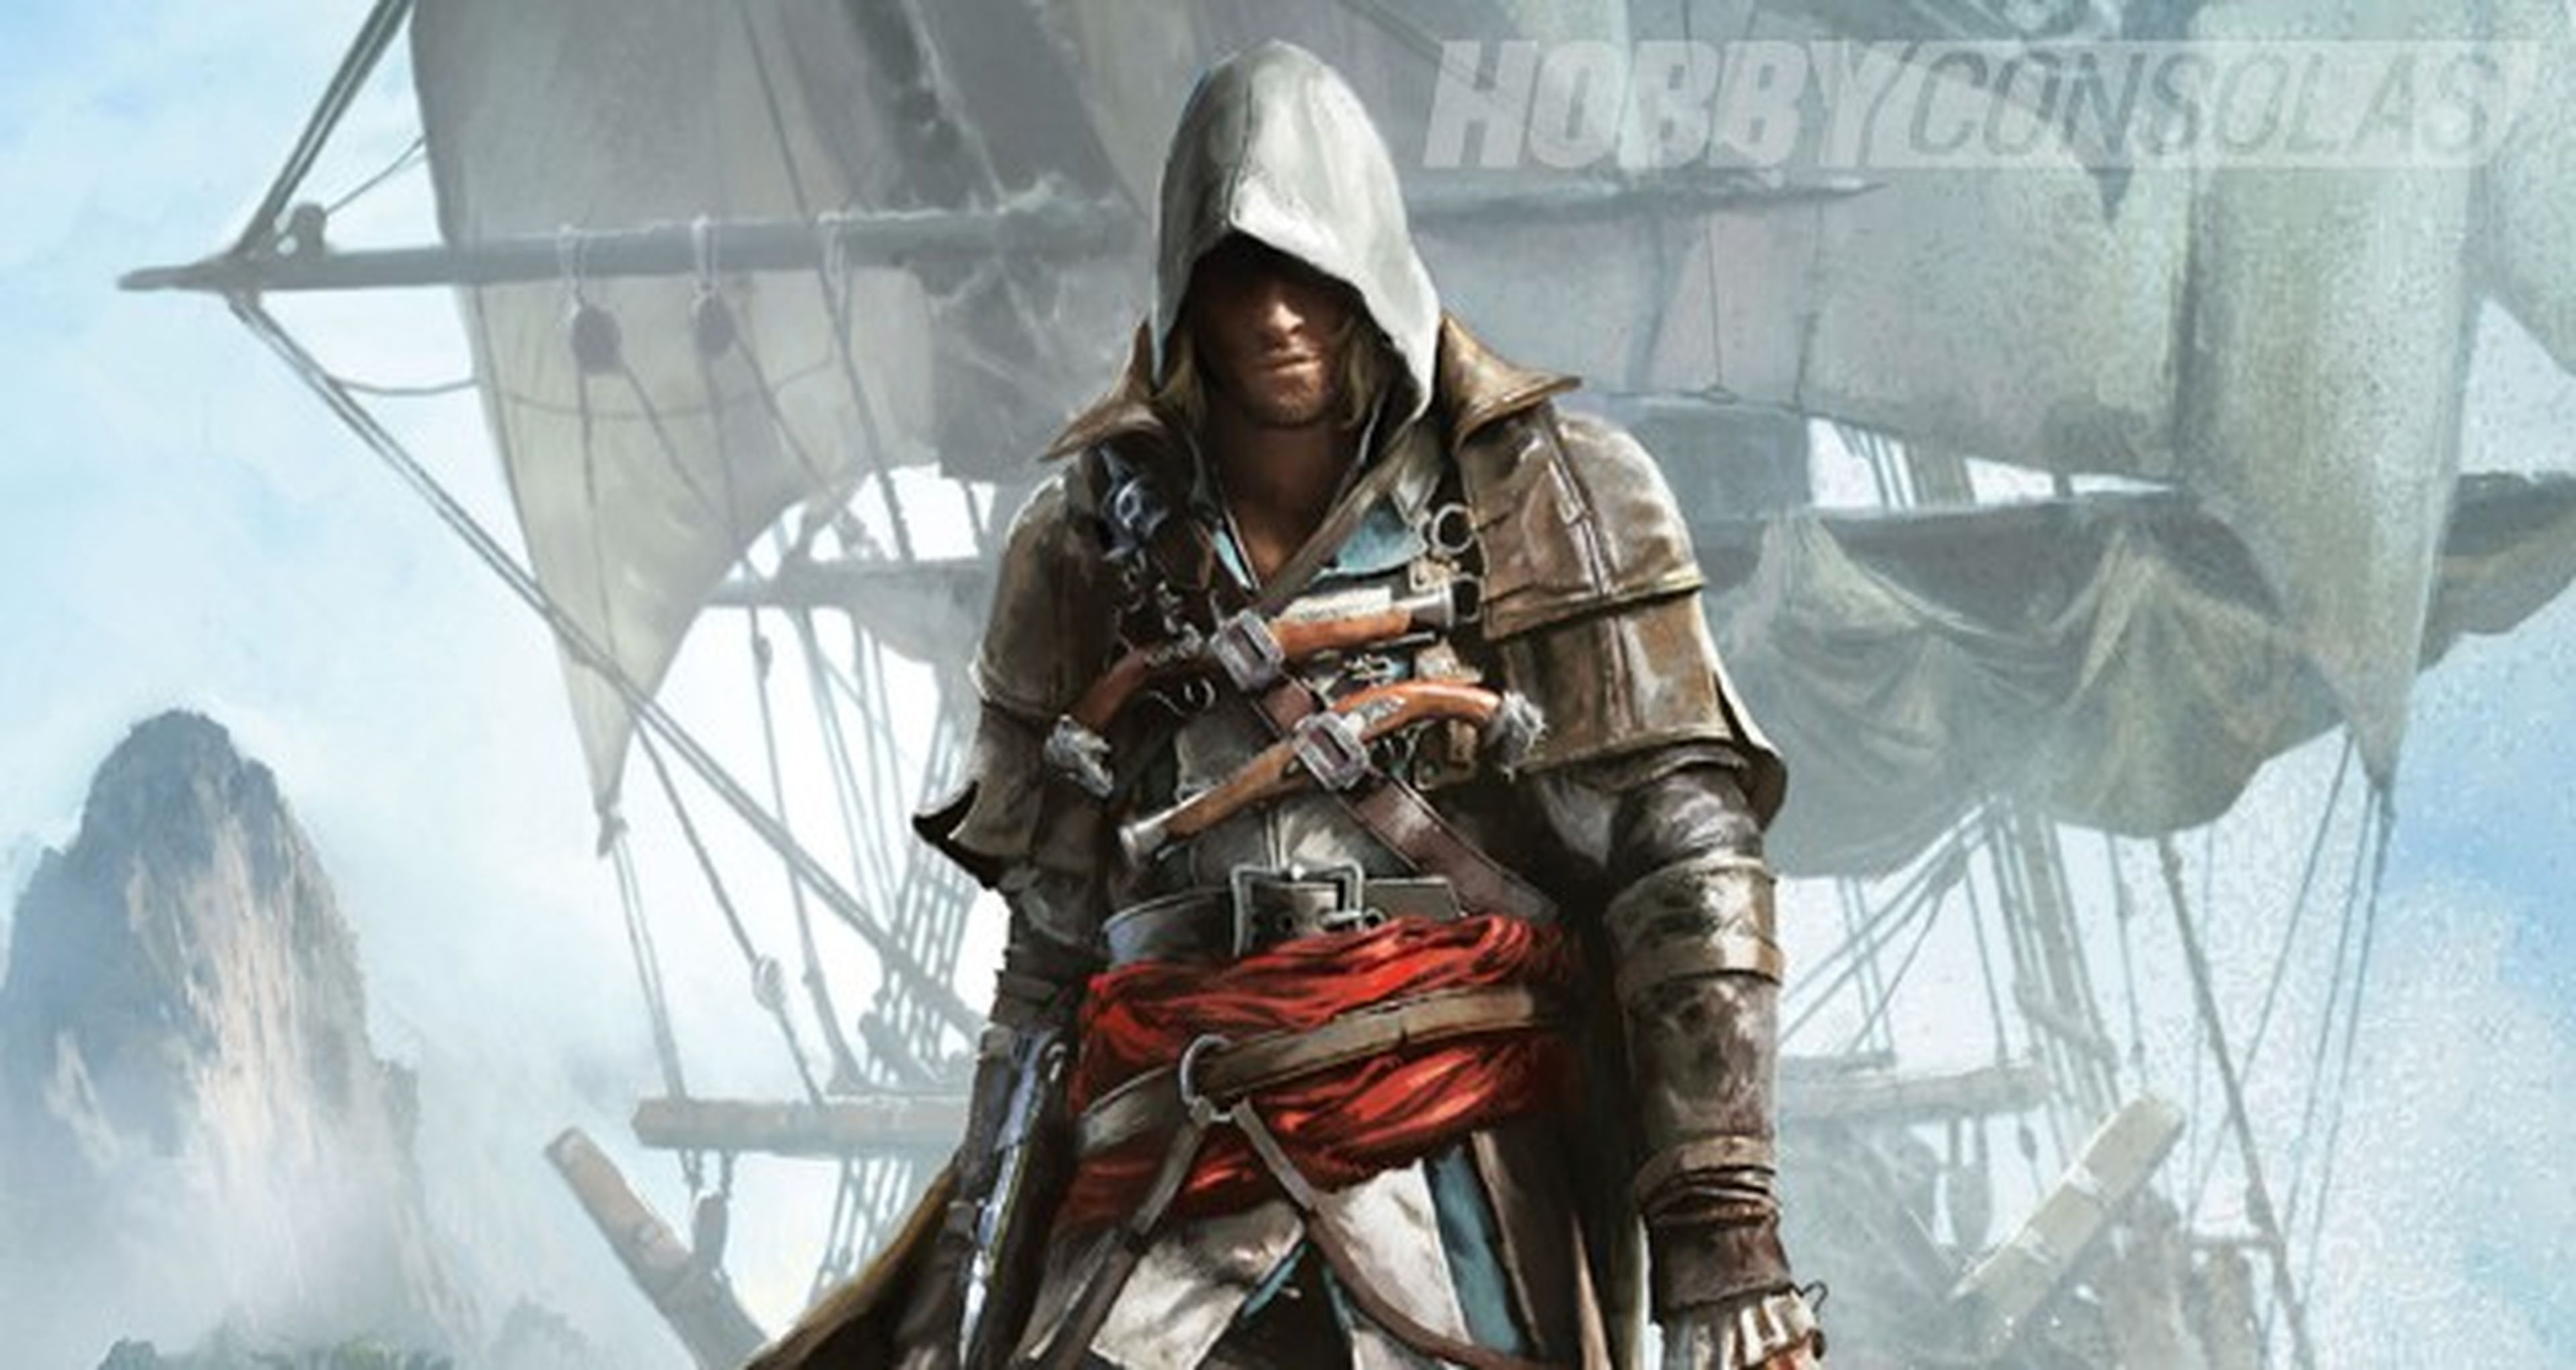 Disponible la BSO de Assassin's Creed IV Black Flag